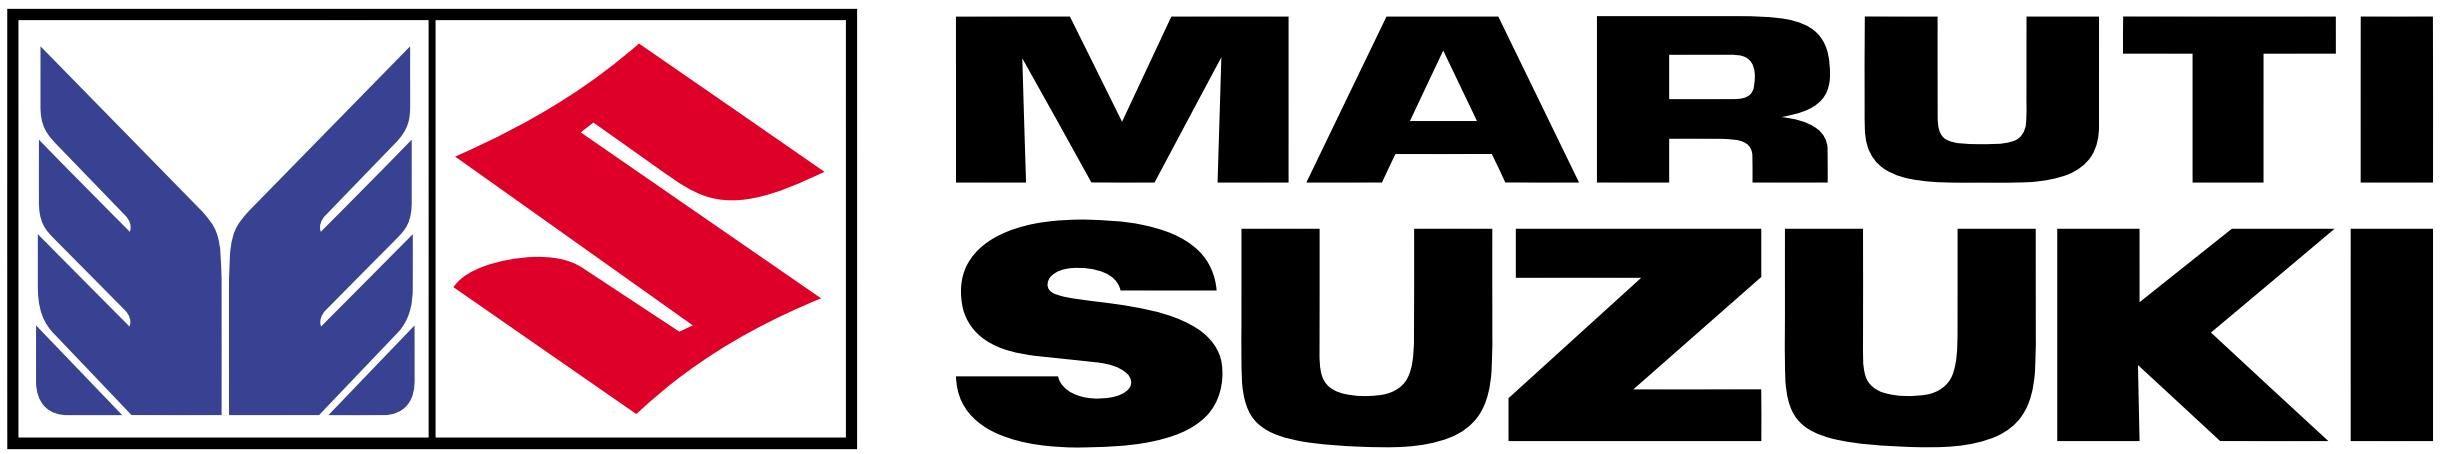 Maruti Suzuki Logo - Maruti Suzuki Logo Vector Free Download